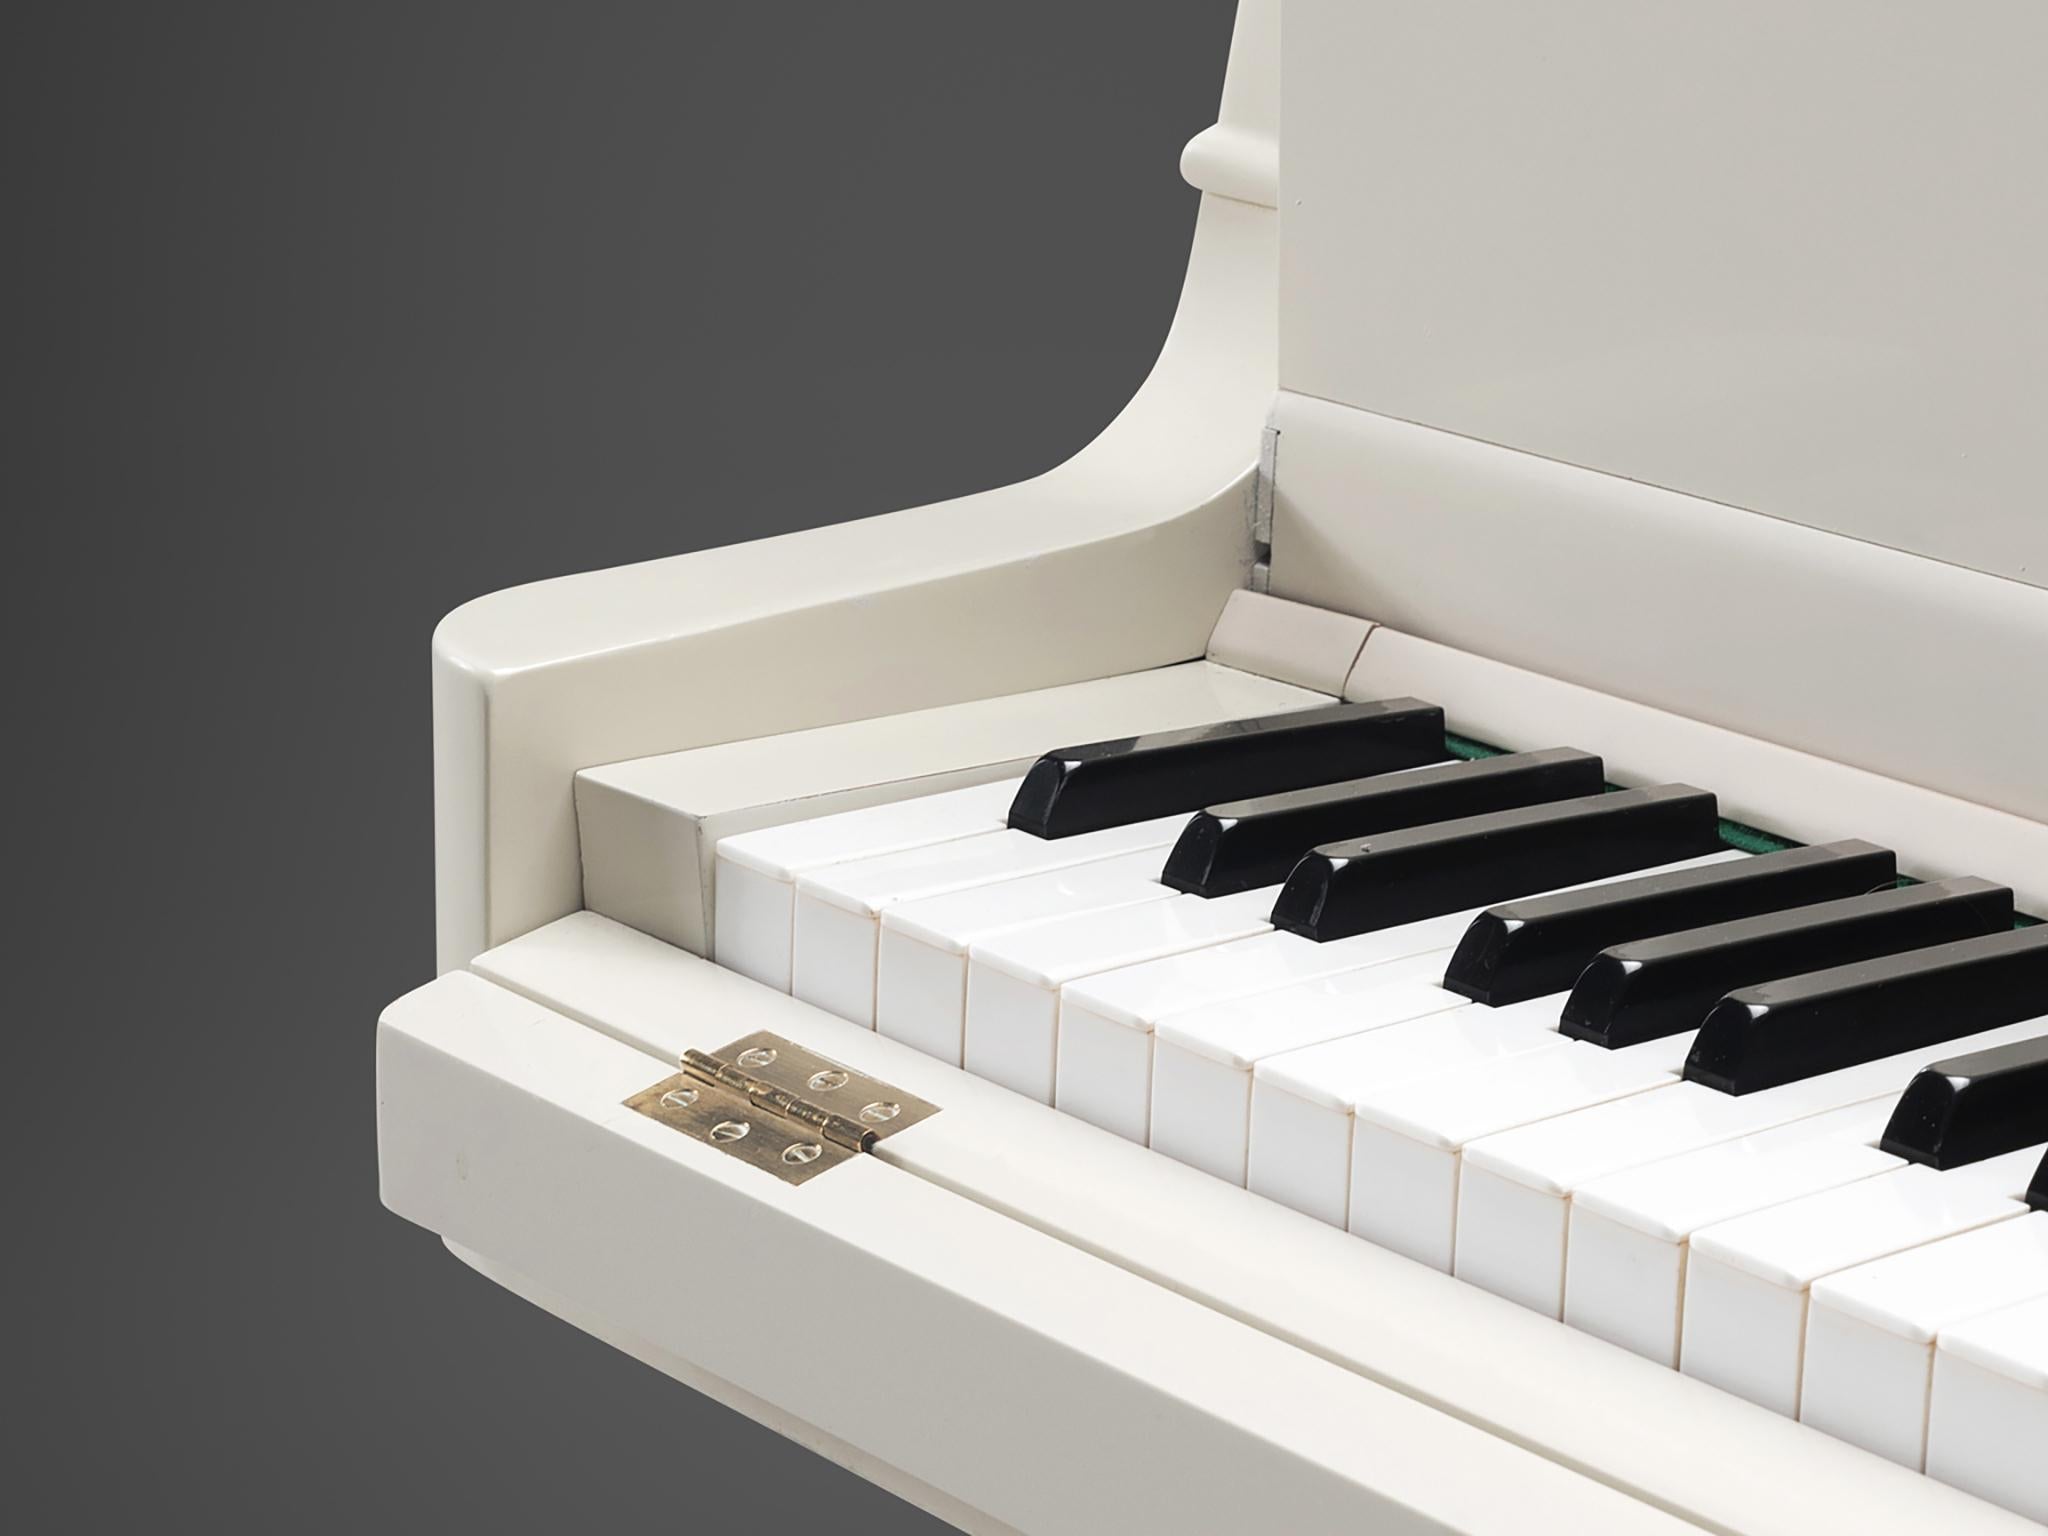 Johan Rippen Grand Piano in Off-White Cast Aluminum